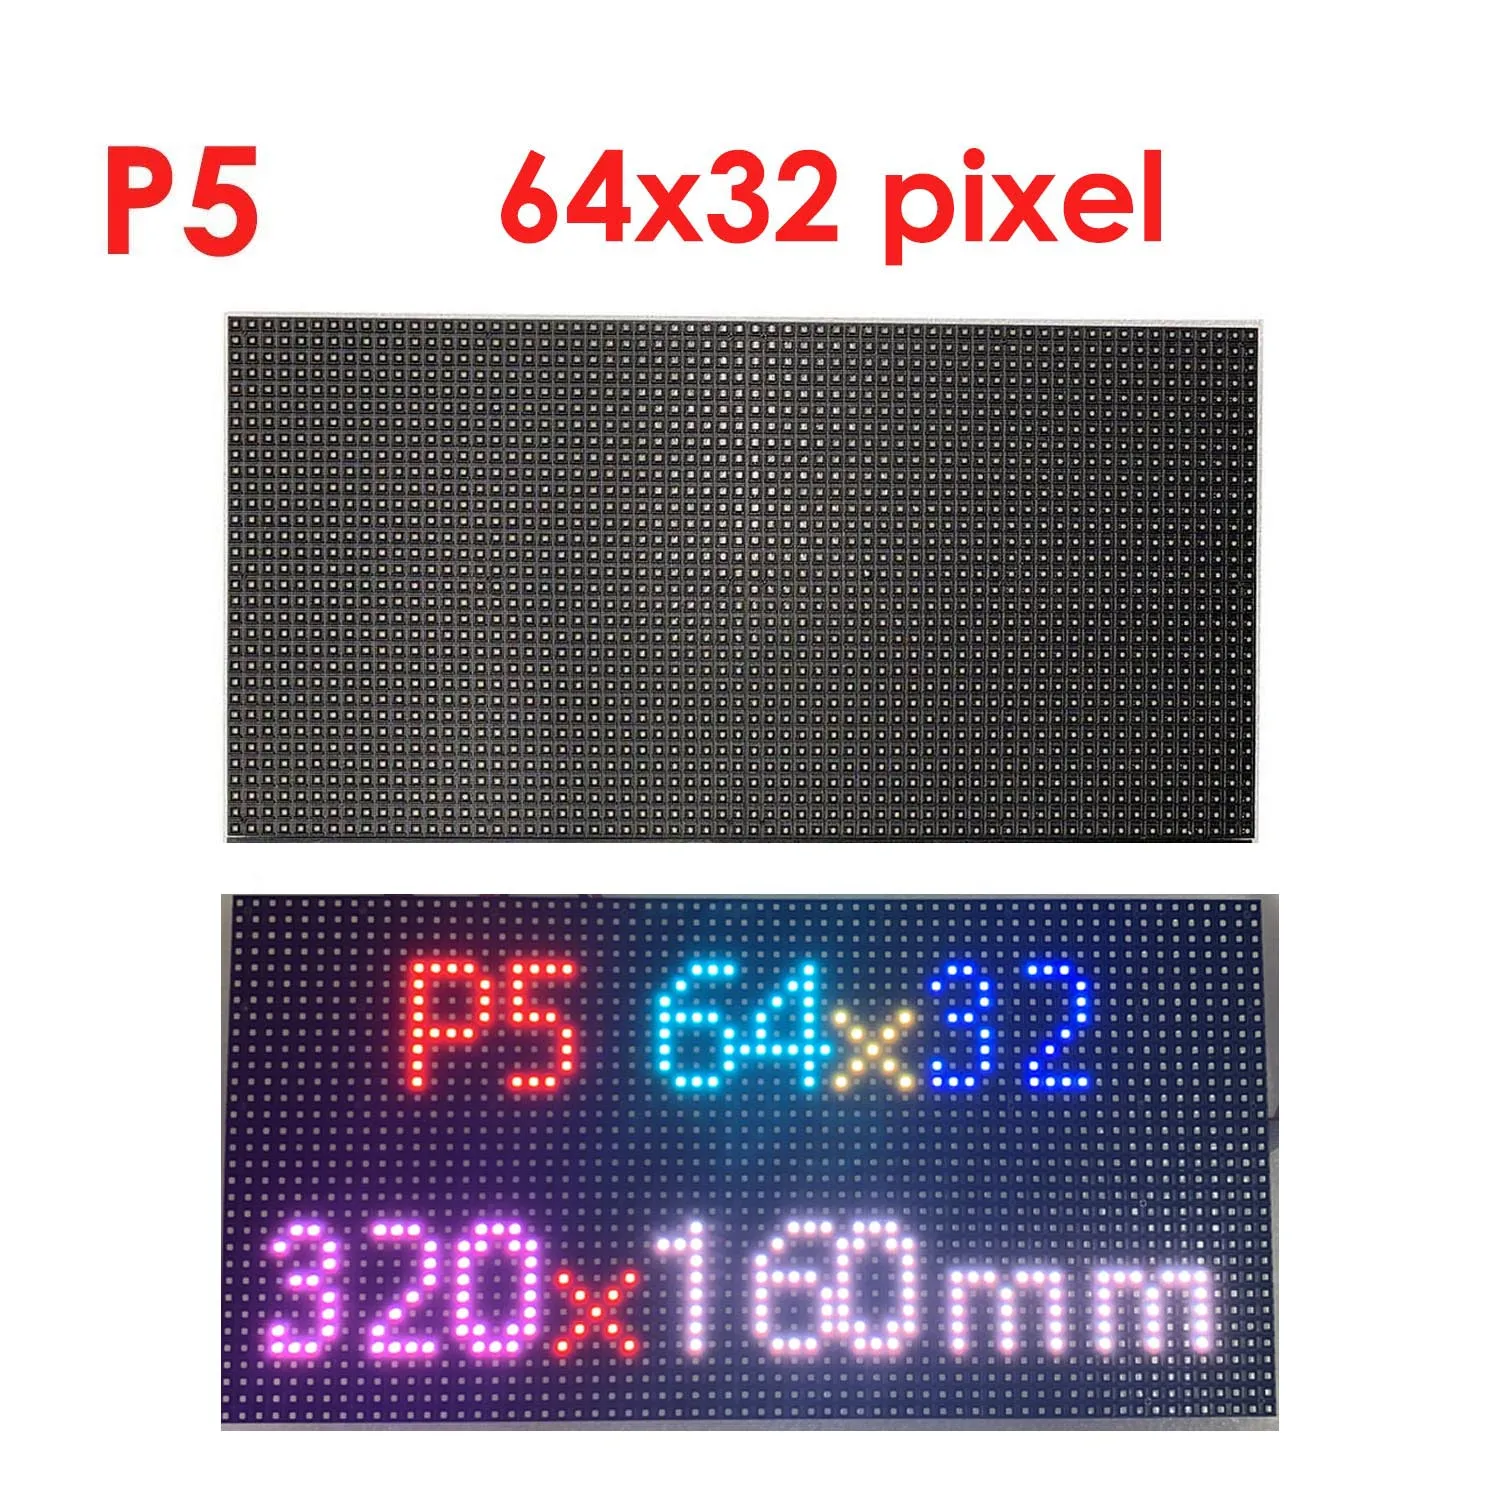 аксесоари за led дисплея сам 64x32 led matrix led модул p4 p5 hub75D е съвместим с контролера на raspberry pi